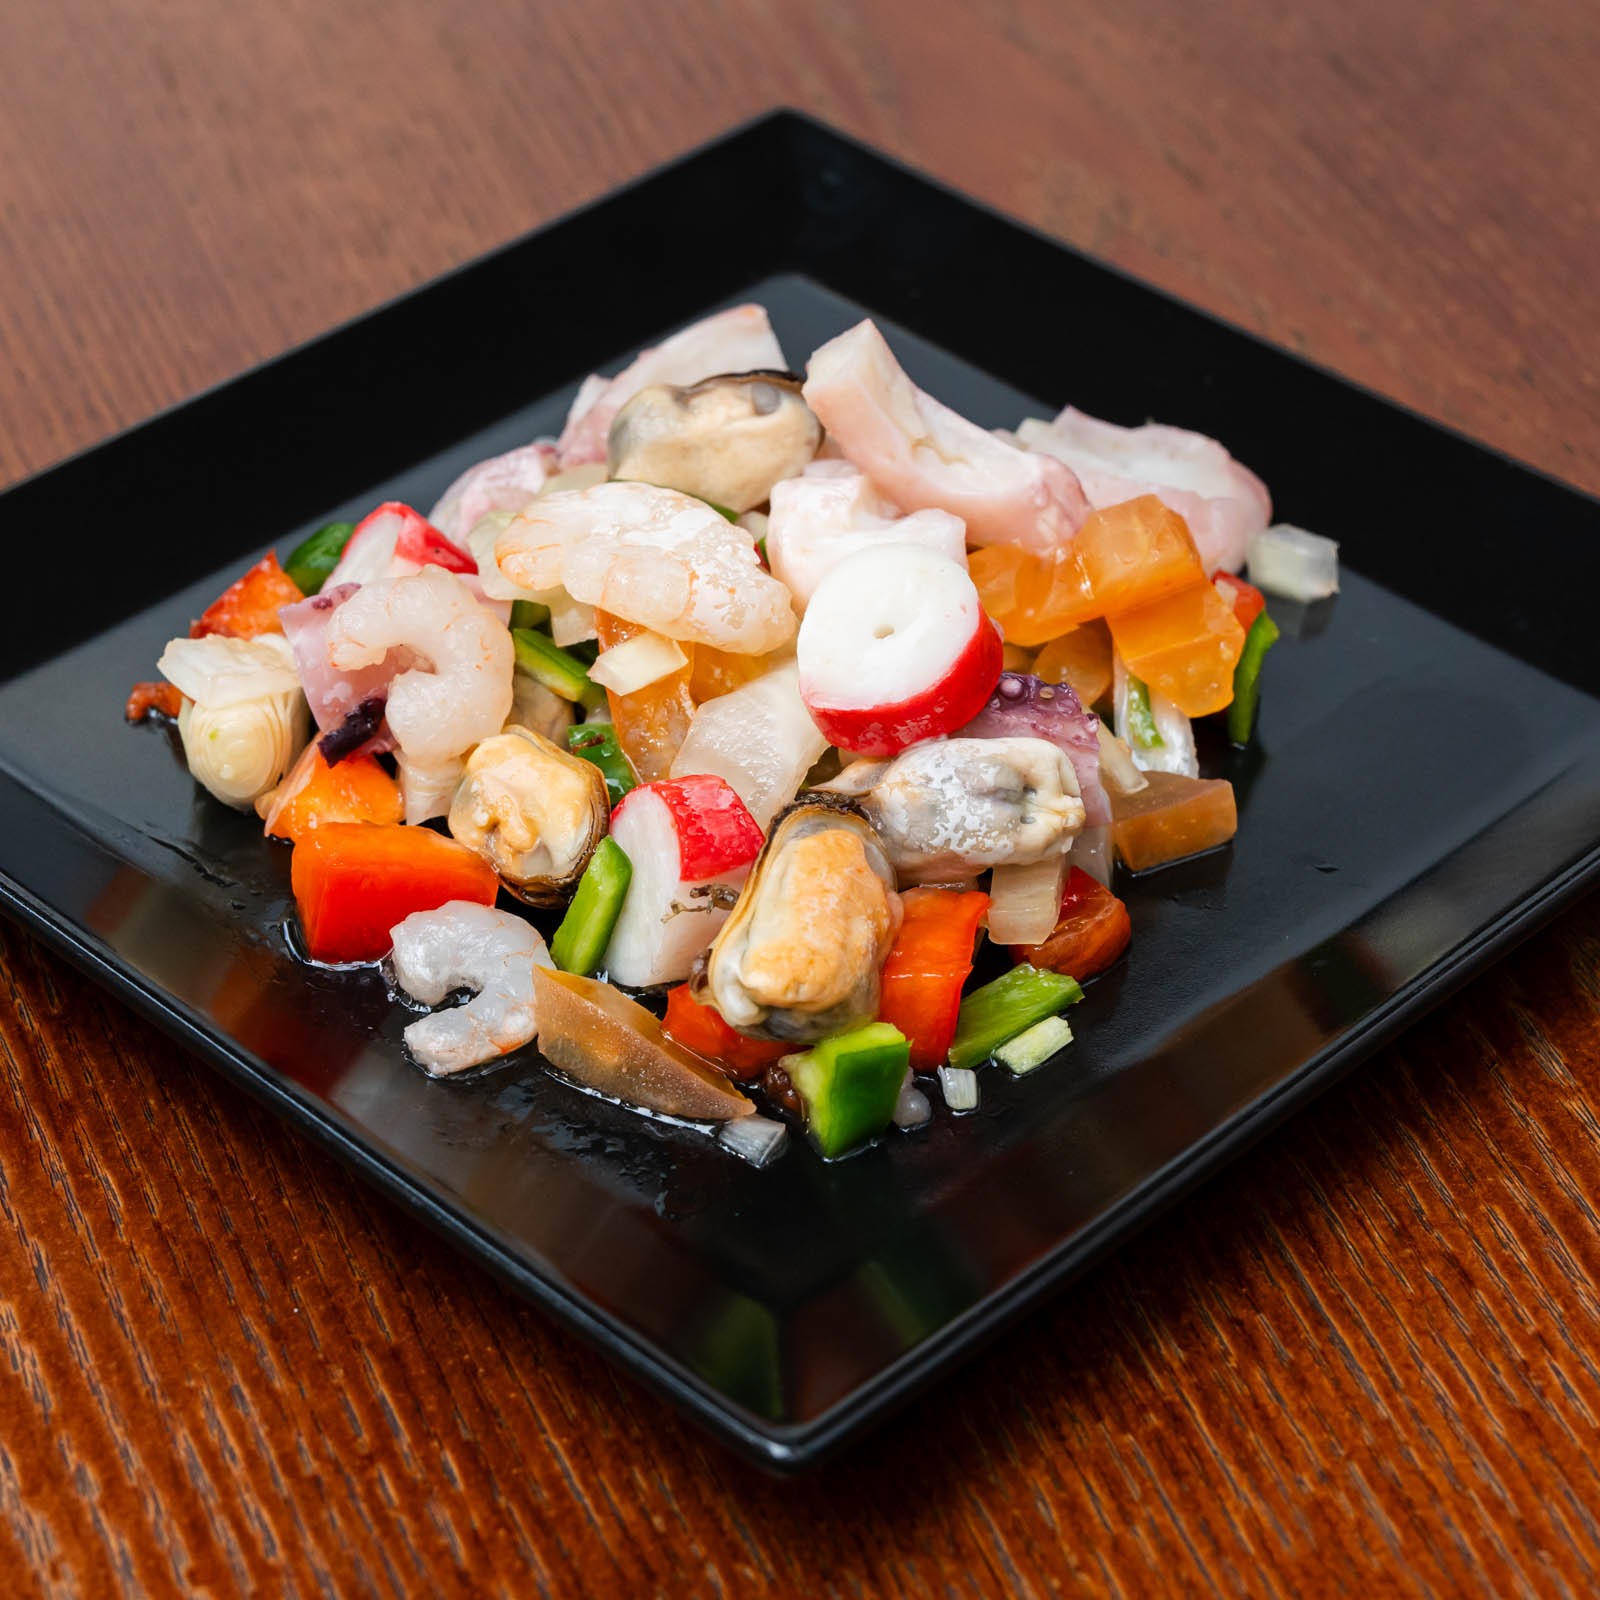 Cold seafood salad